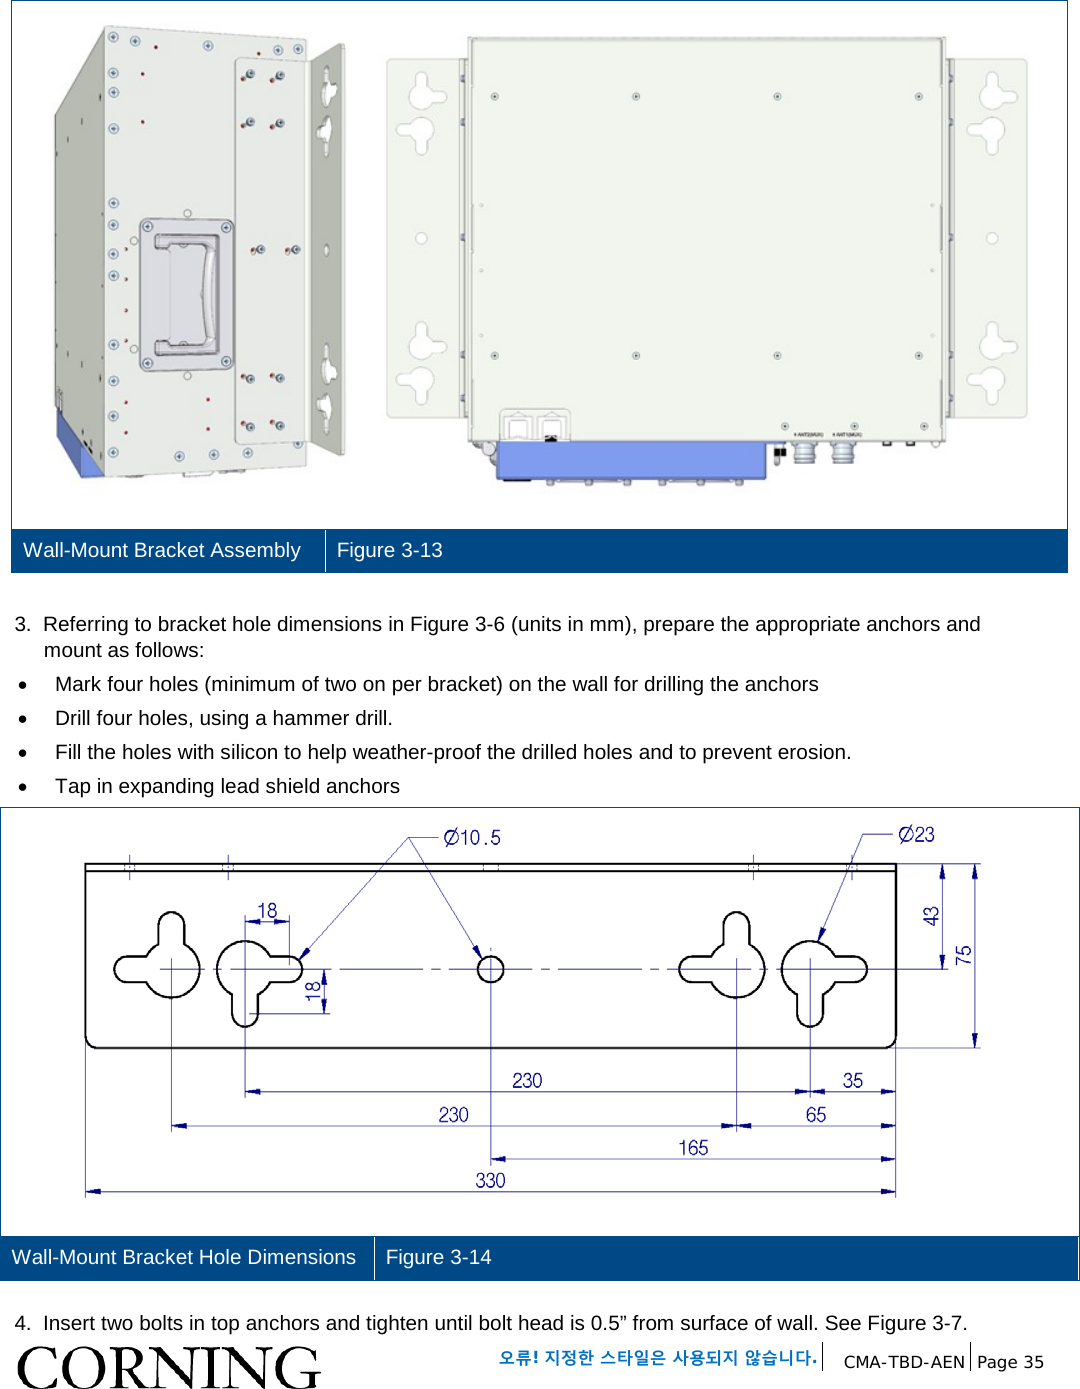   오류! 지정한 스타일은 사용되지 않습니다. CMA-TBD-AEN Page 35    Wall-Mount Bracket Assembly Figure 3-13  3.  Referring to bracket hole dimensions in Figure 3-6 (units in mm), prepare the appropriate anchors and mount as follows: • Mark four holes (minimum of two on per bracket) on the wall for drilling the anchors •  Drill four holes, using a hammer drill. • Fill the holes with silicon to help weather-proof the drilled holes and to prevent erosion. • Tap in expanding lead shield anchors  Wall-Mount Bracket Hole Dimensions Figure 3-14  4.  Insert two bolts in top anchors and tighten until bolt head is 0.5” from surface of wall. See Figure 3-7. 